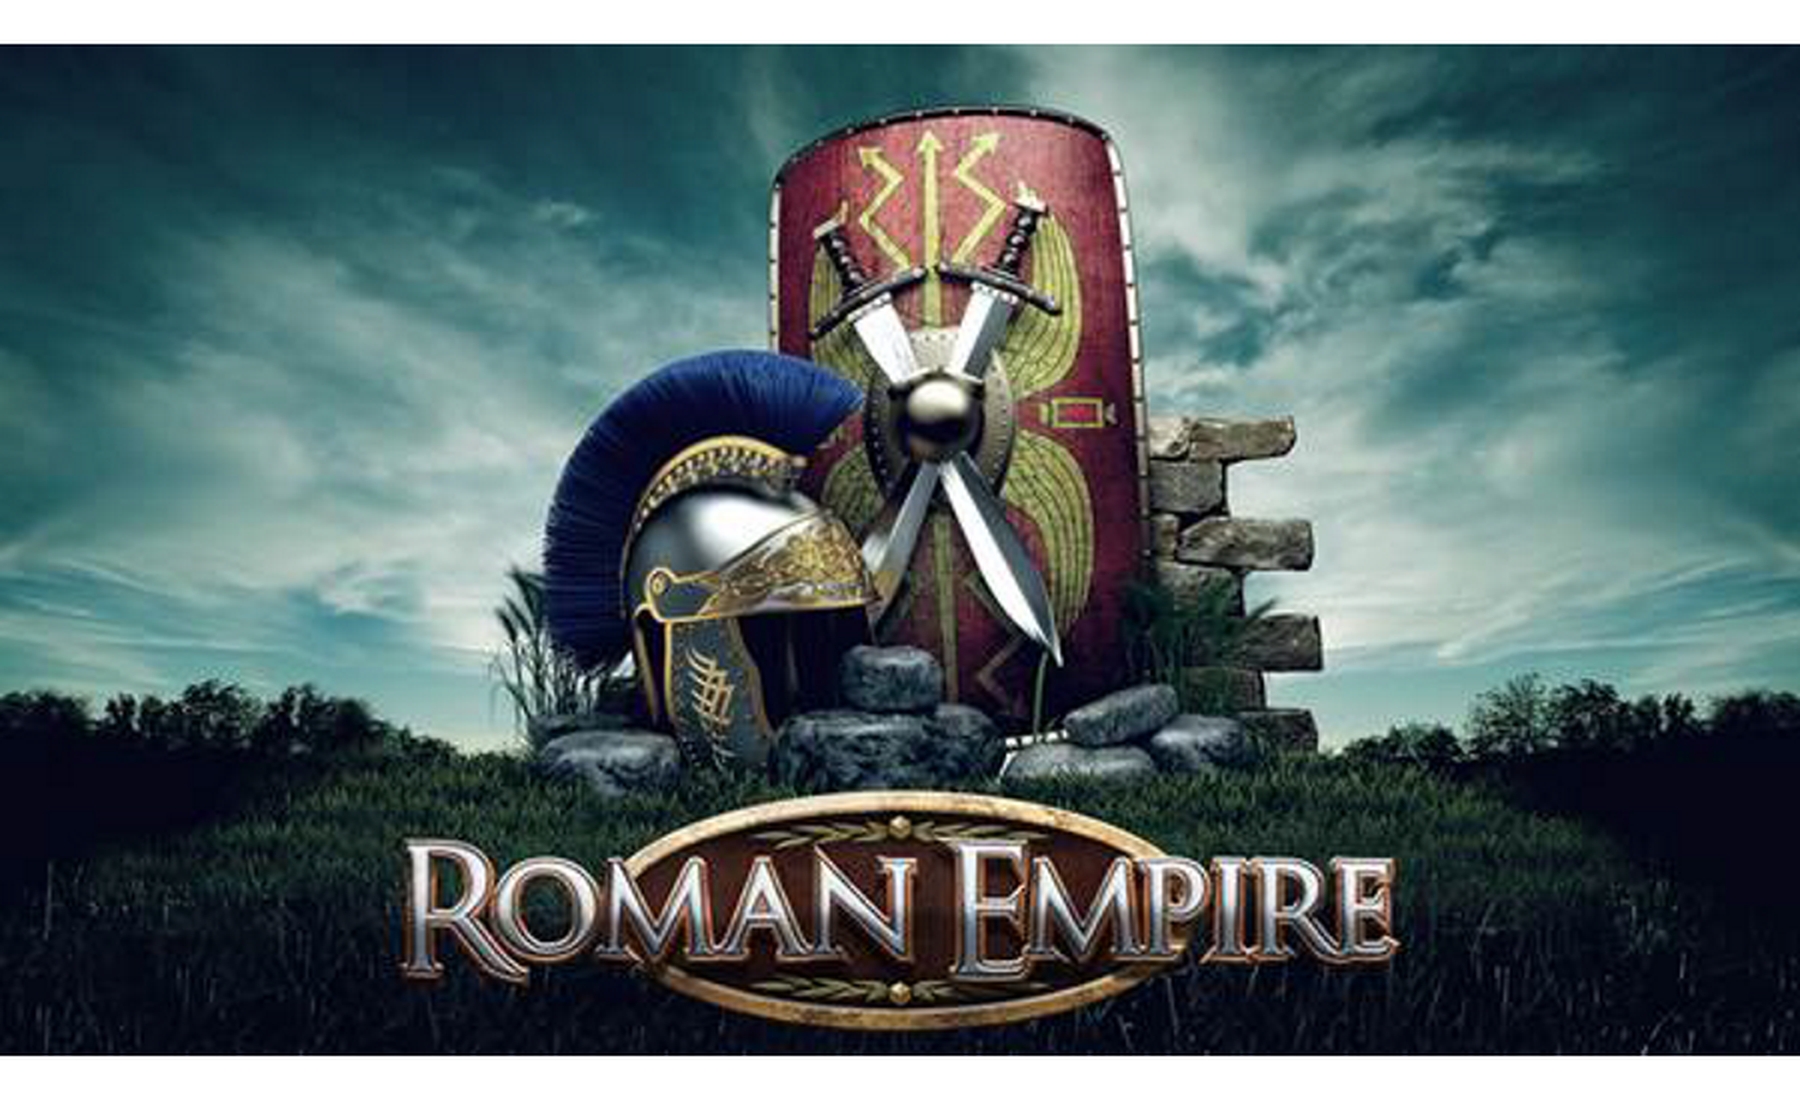 Roman Empire demo